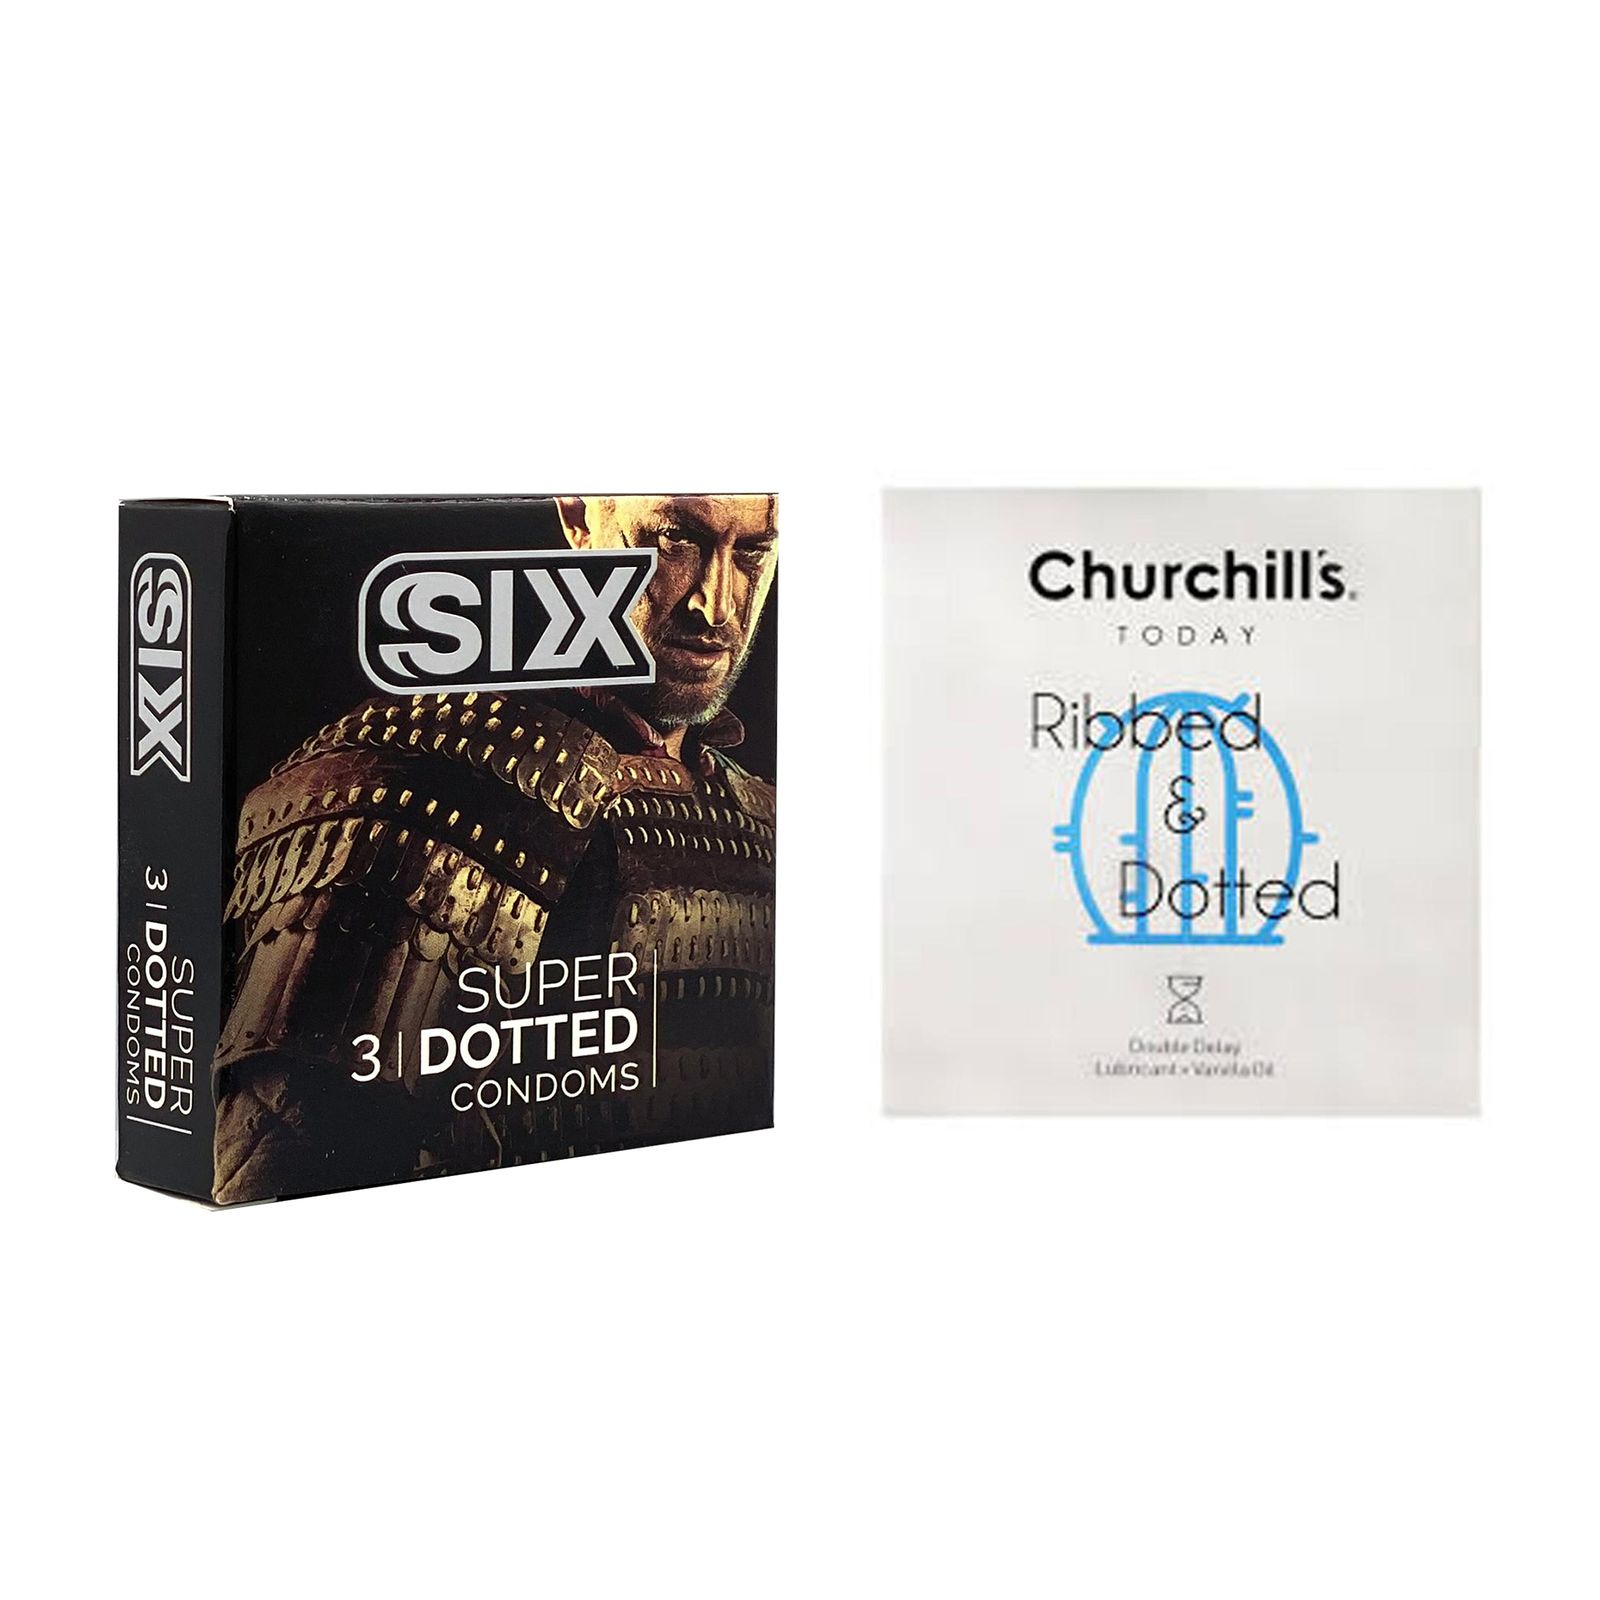 کاندوم چرچیلز مدل Ribbed & Dotted بسته 3 عددی به همراه کاندوم سیکس مدل خاردار بسته 3 عددی -  - 1